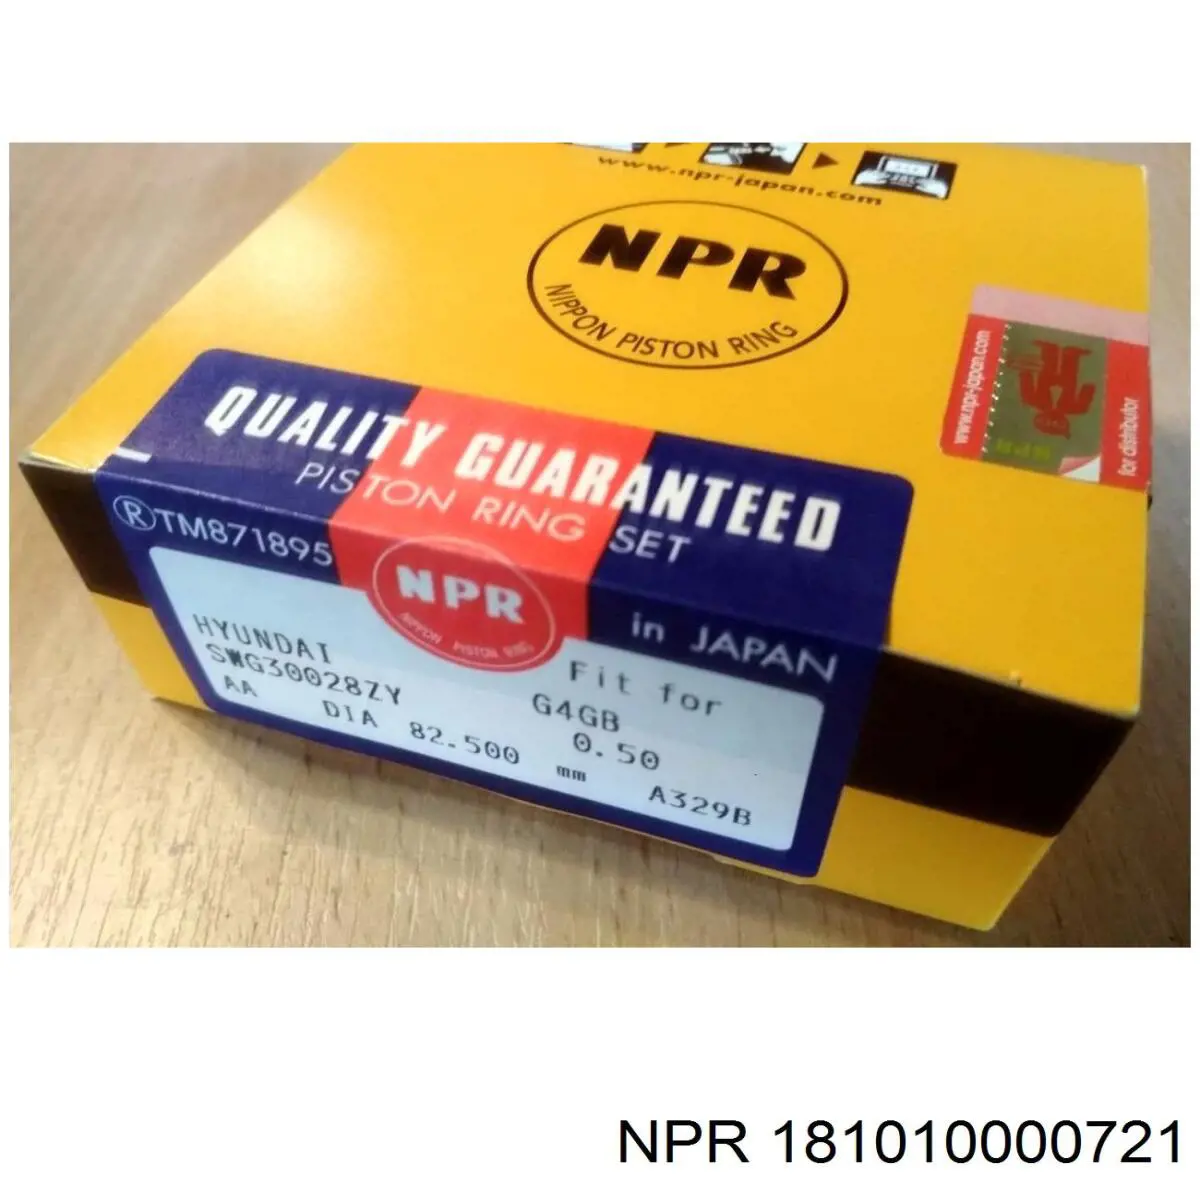 181010000721 NE/NPR juego de cojinetes de biela, cota de reparación +0,50 mm